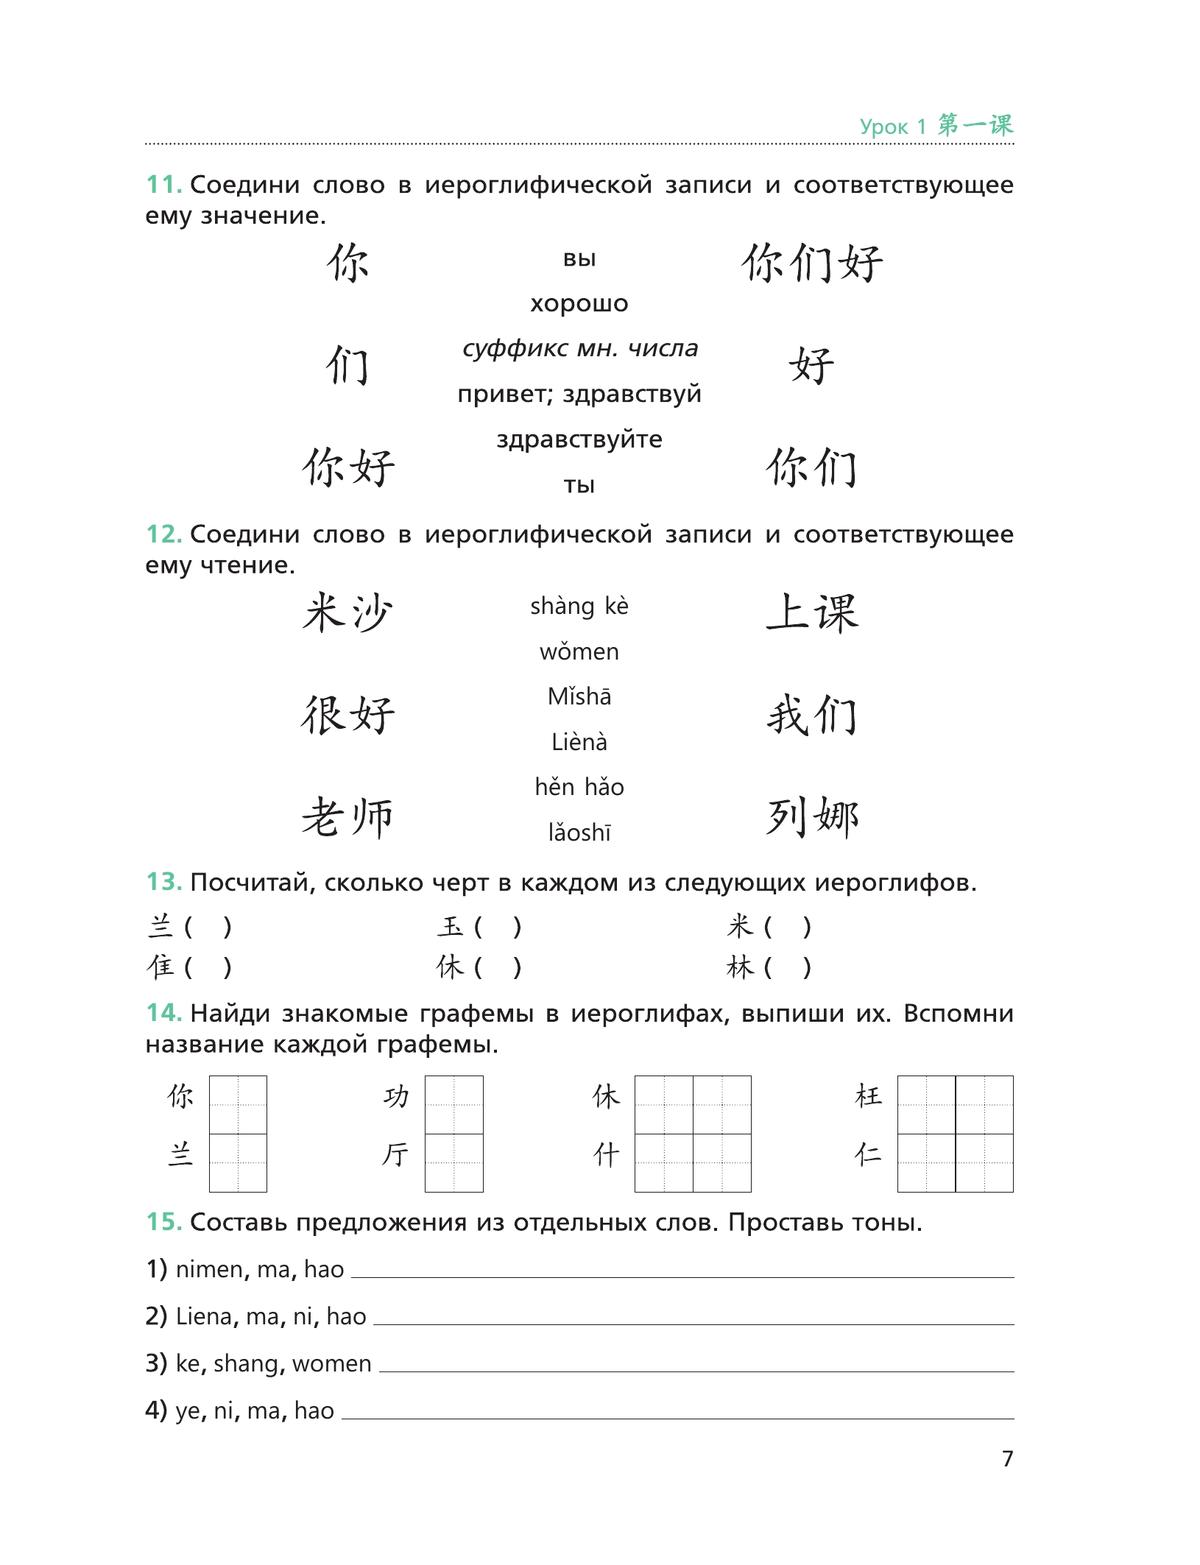 Китайский язык. Второй иностранный язык. Рабочая тетрадь. 5 класс 11